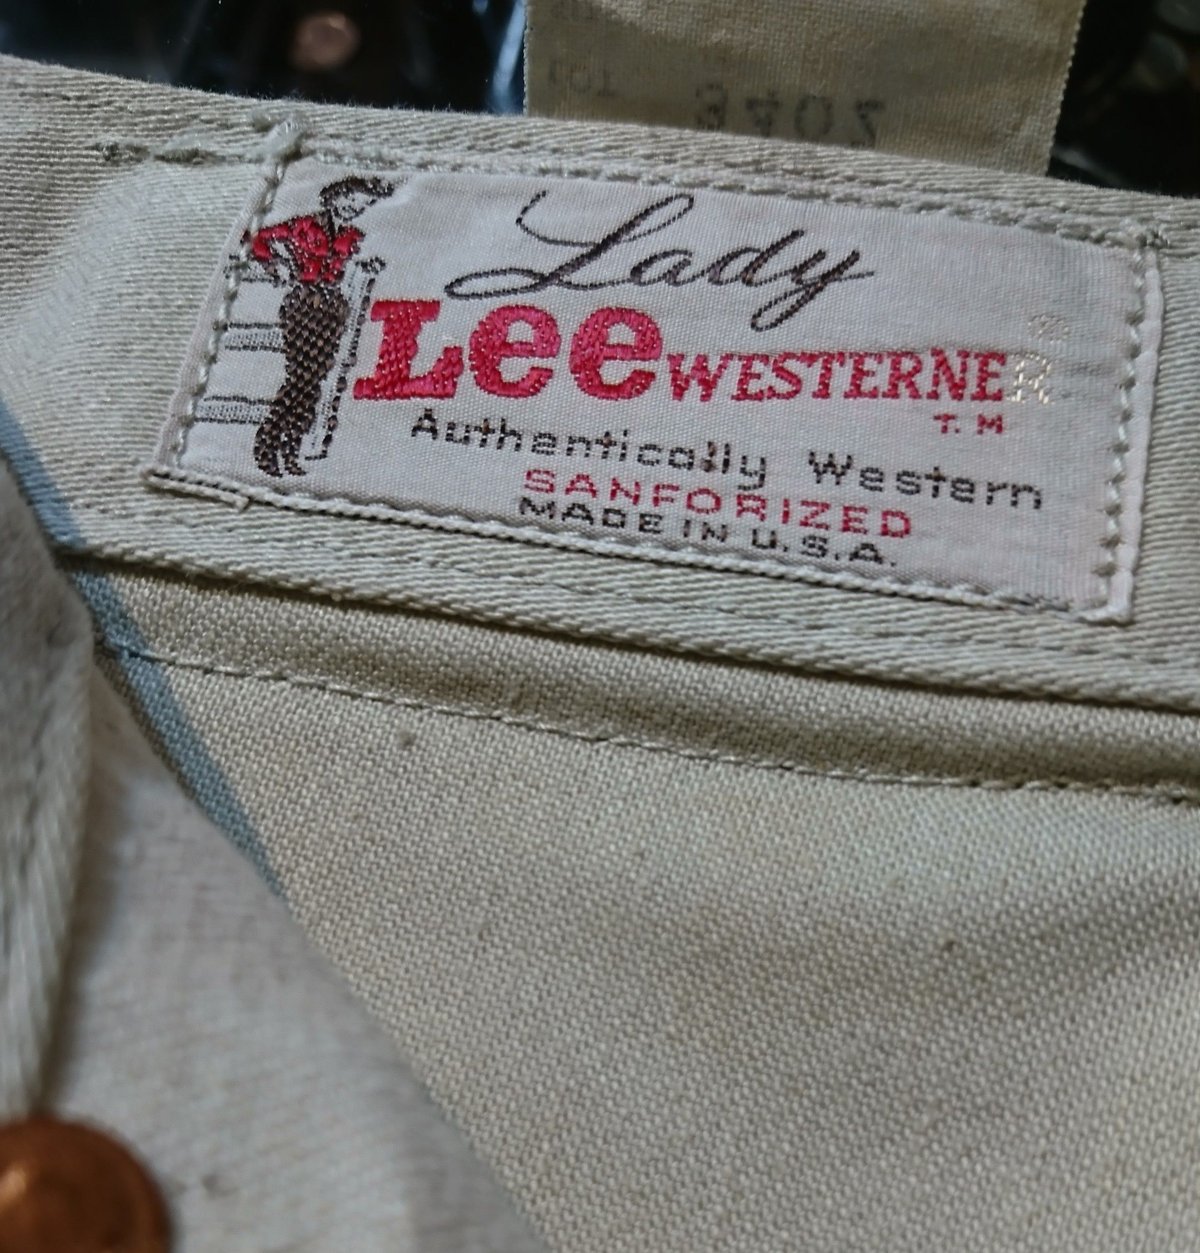 60s vintage lee westerner pants リー ウエスターナー パンツ